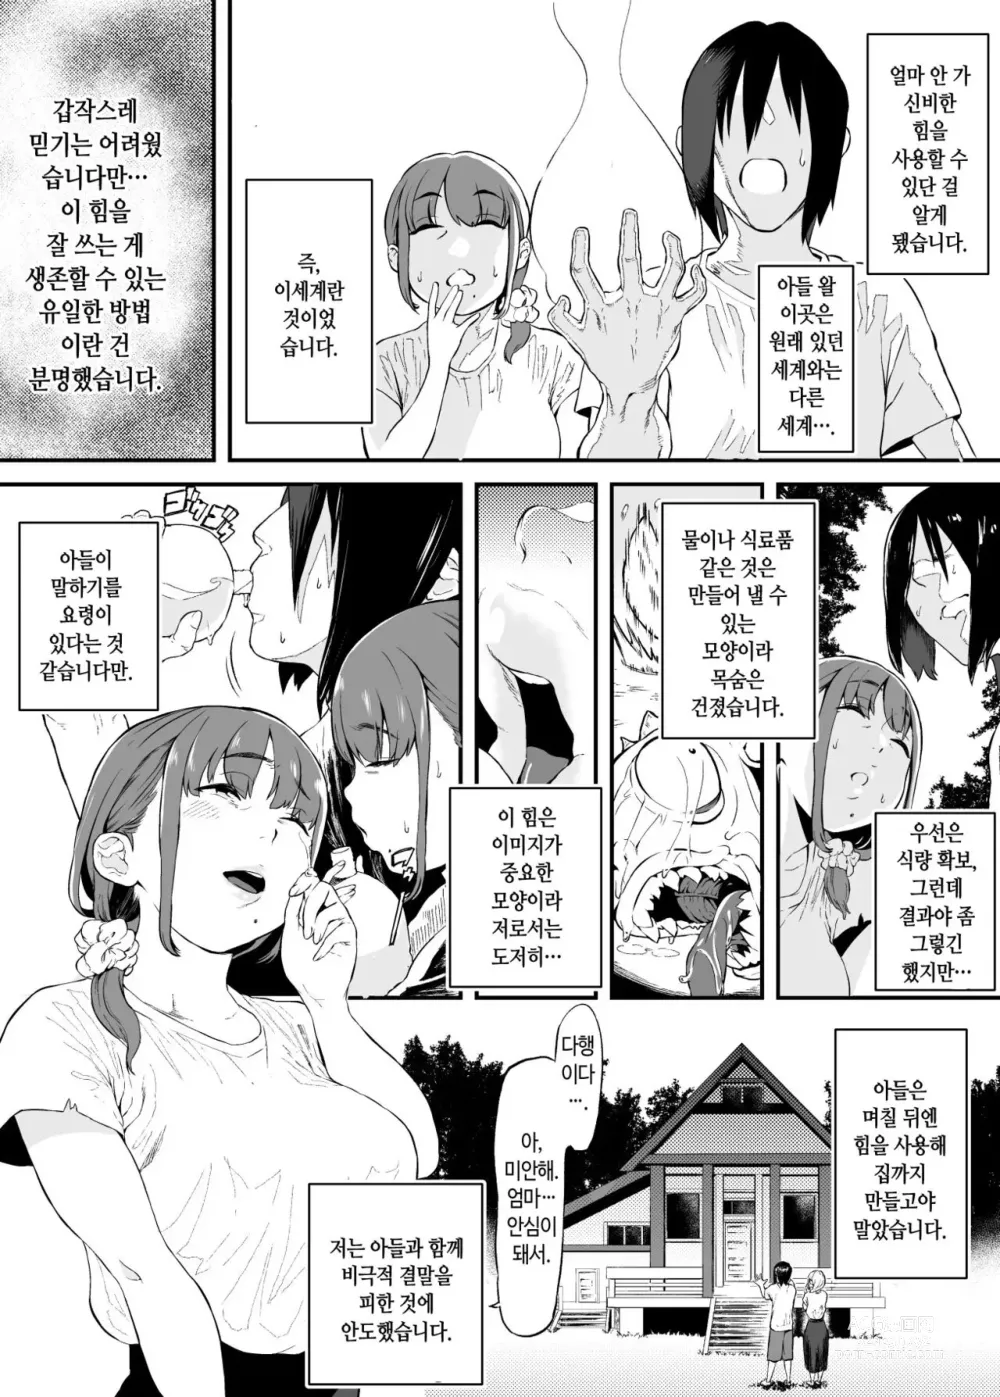 Page 4 of doujinshi 이세계에서 엄마랑